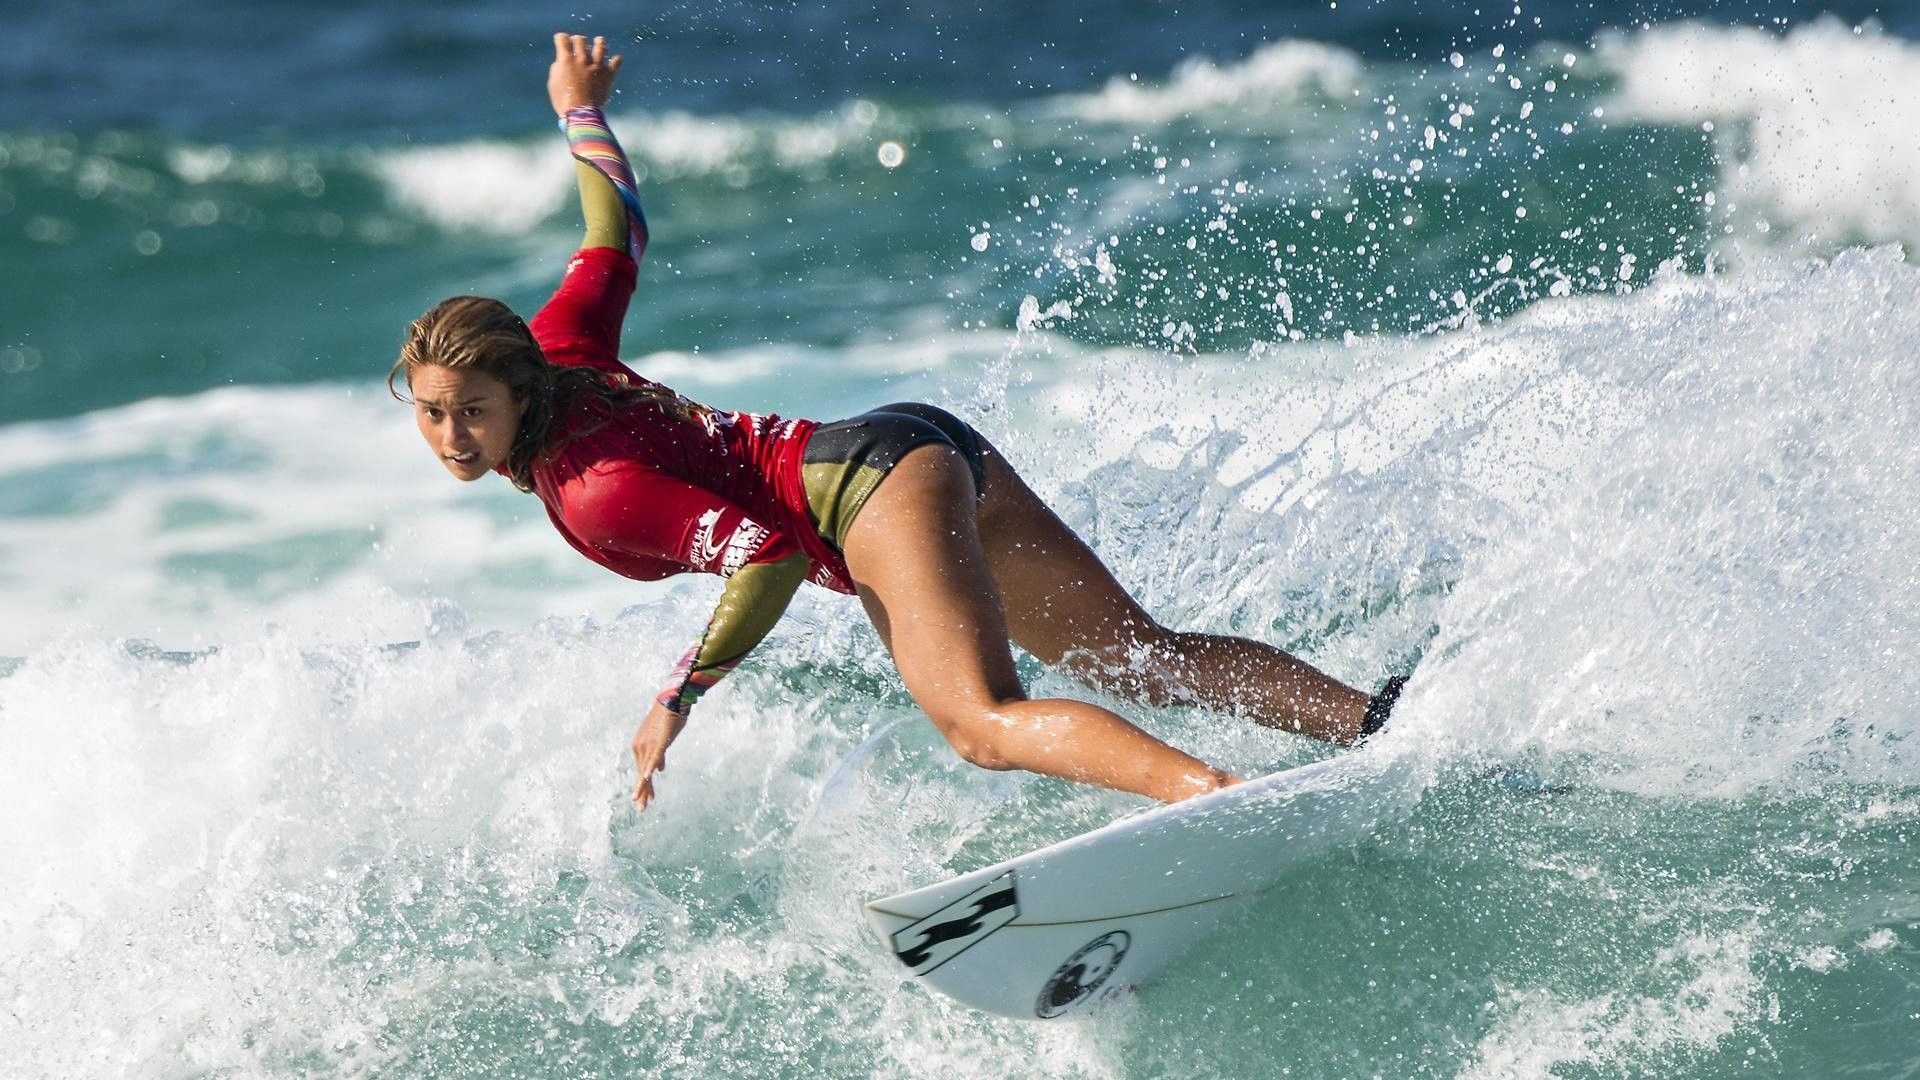 Surfer Girl Wallpaper. Surfer girl, Surfing, Surfer